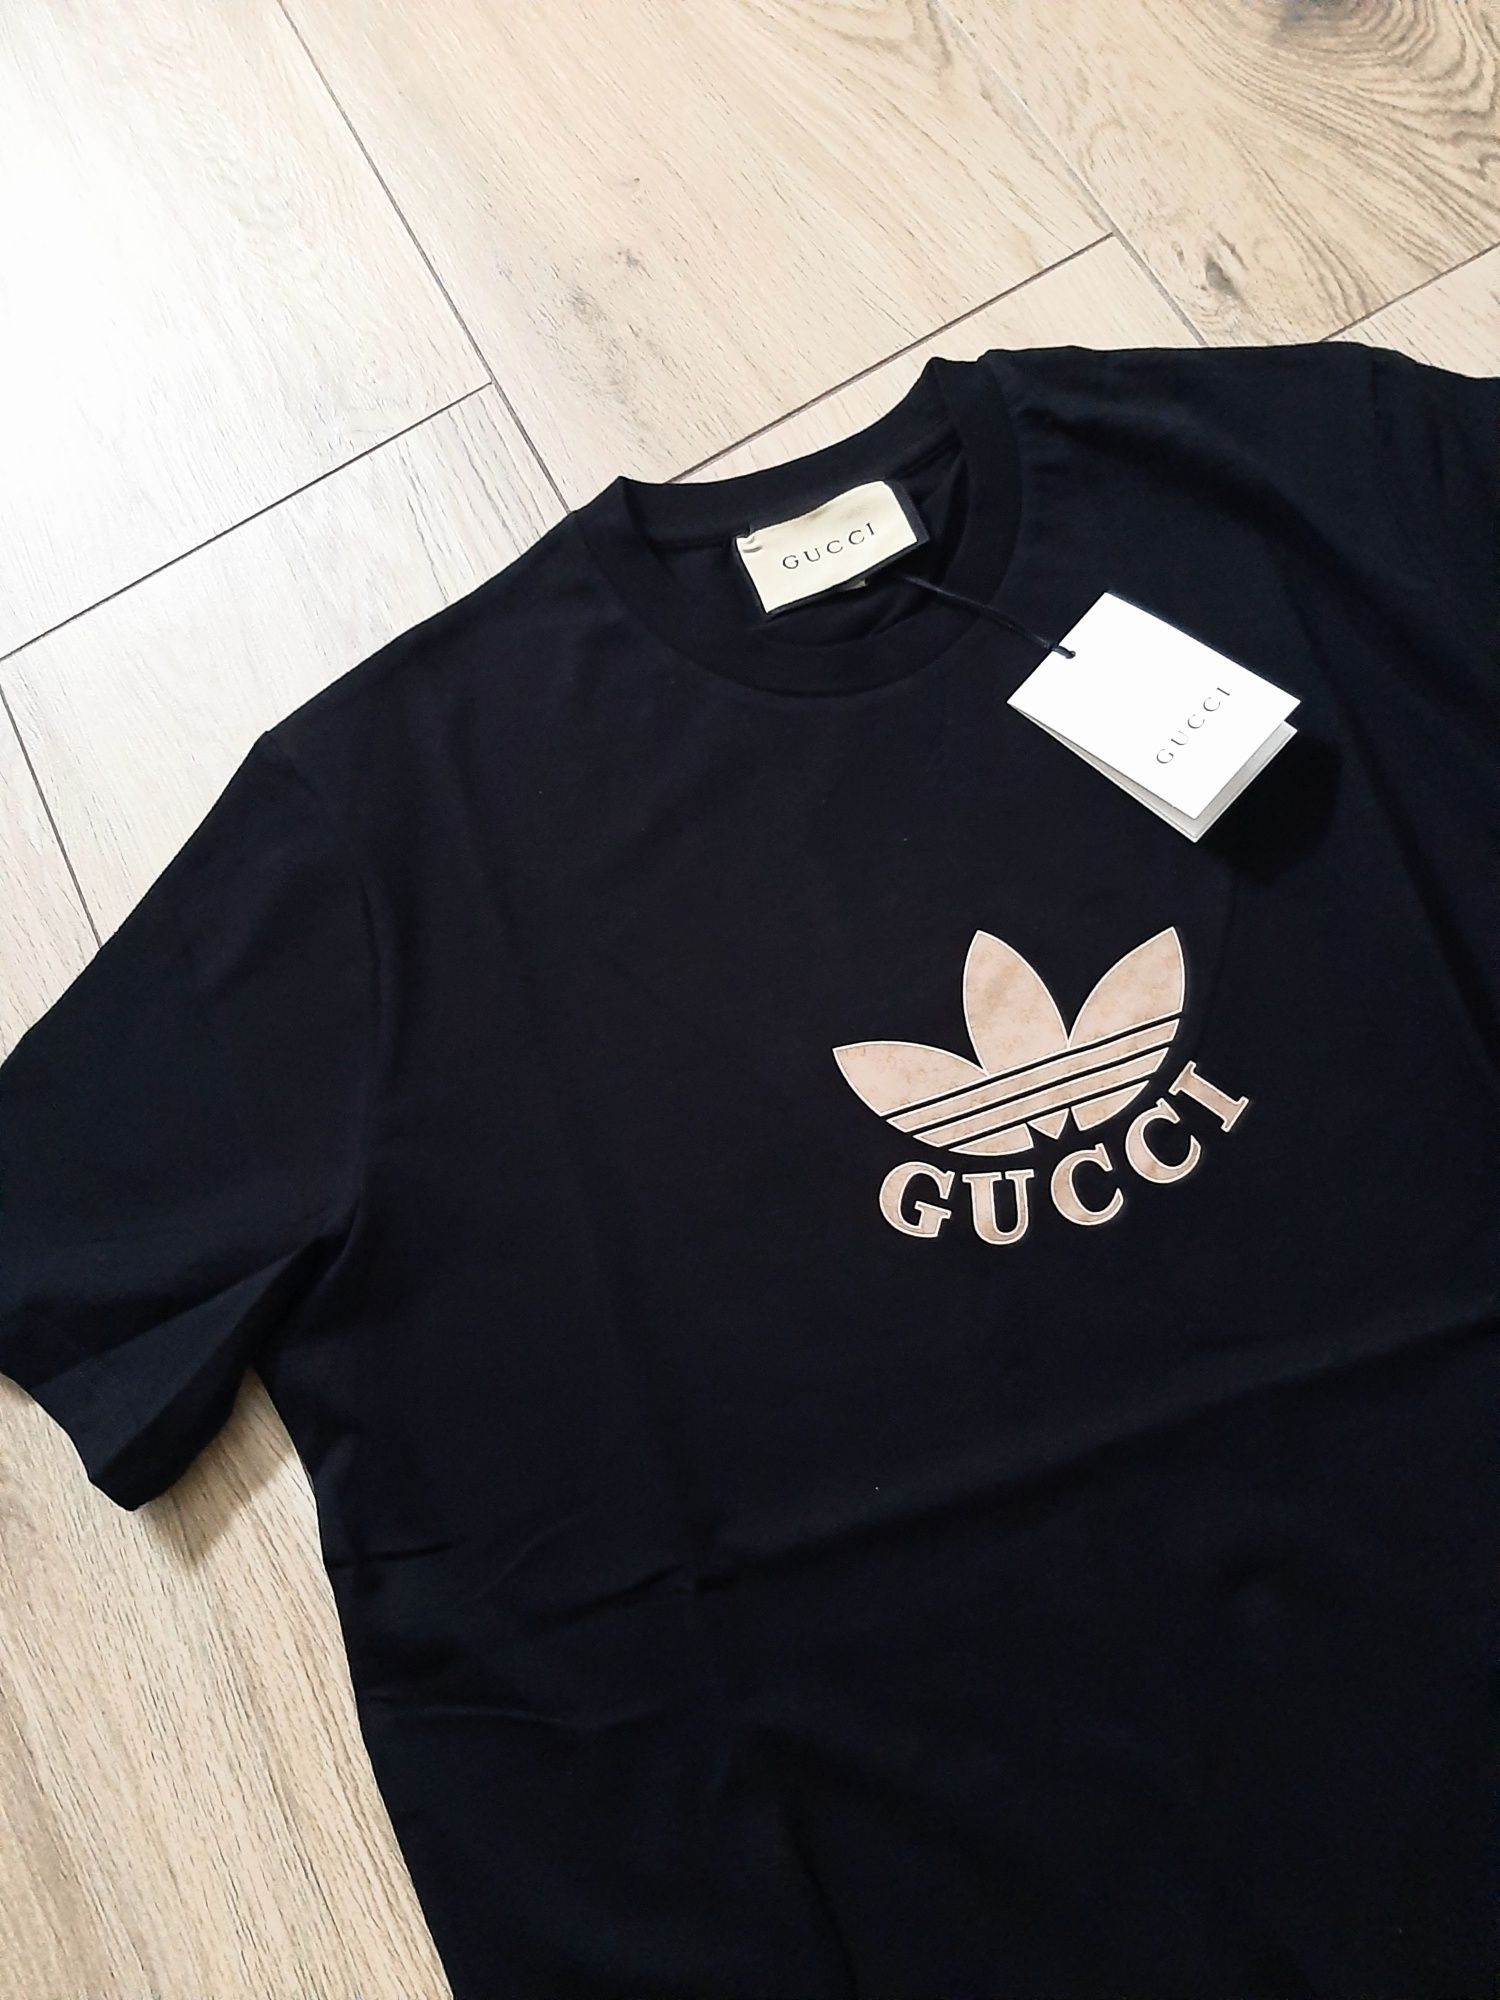 Gucci&adidas świetny męski T-shirt rozmiar XXL